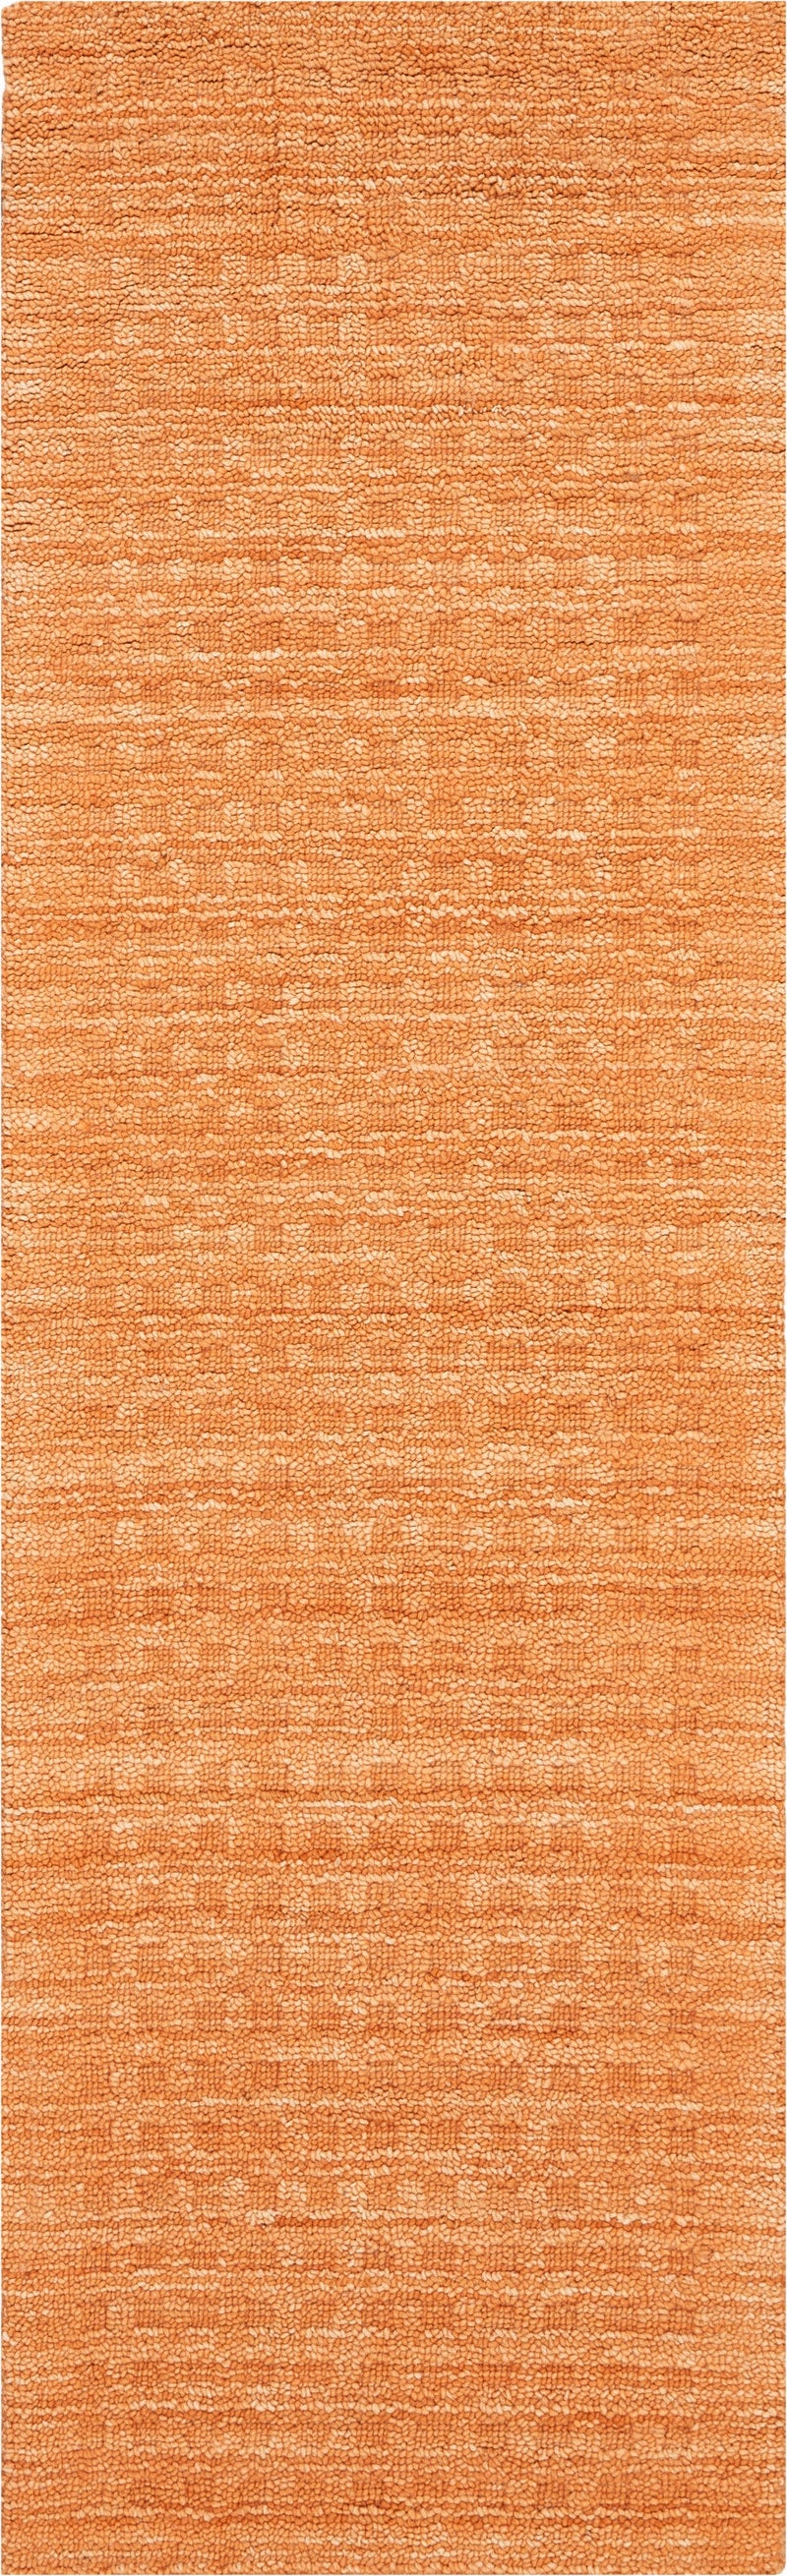 media image for marana handmade sunset rug by nourison 99446400604 redo 2 275